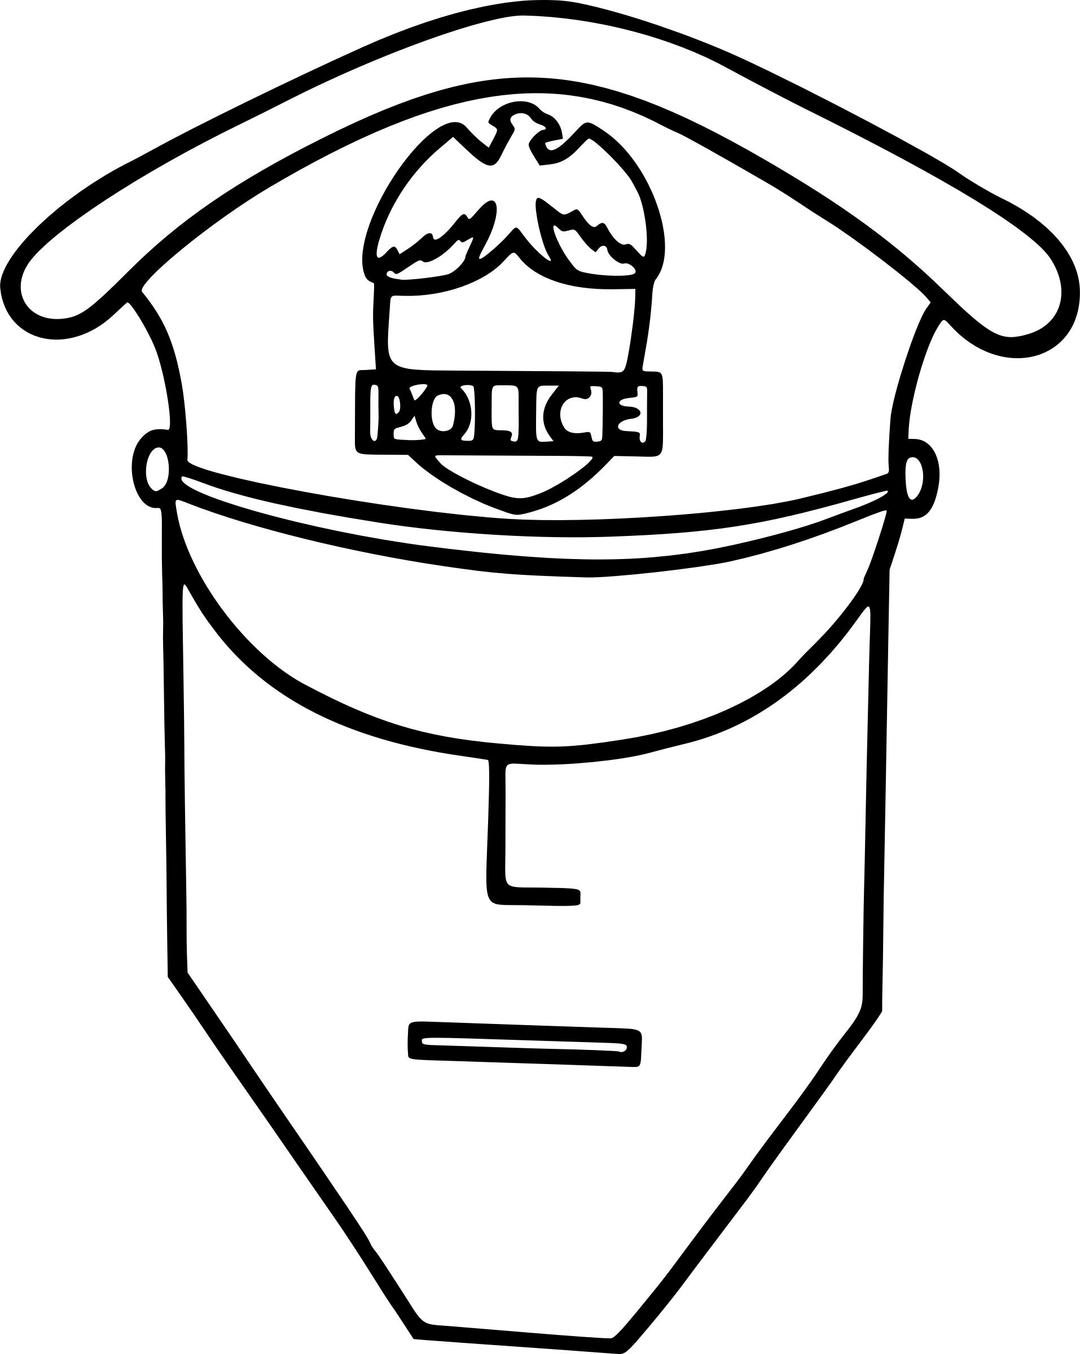 Policeman 2 png transparent